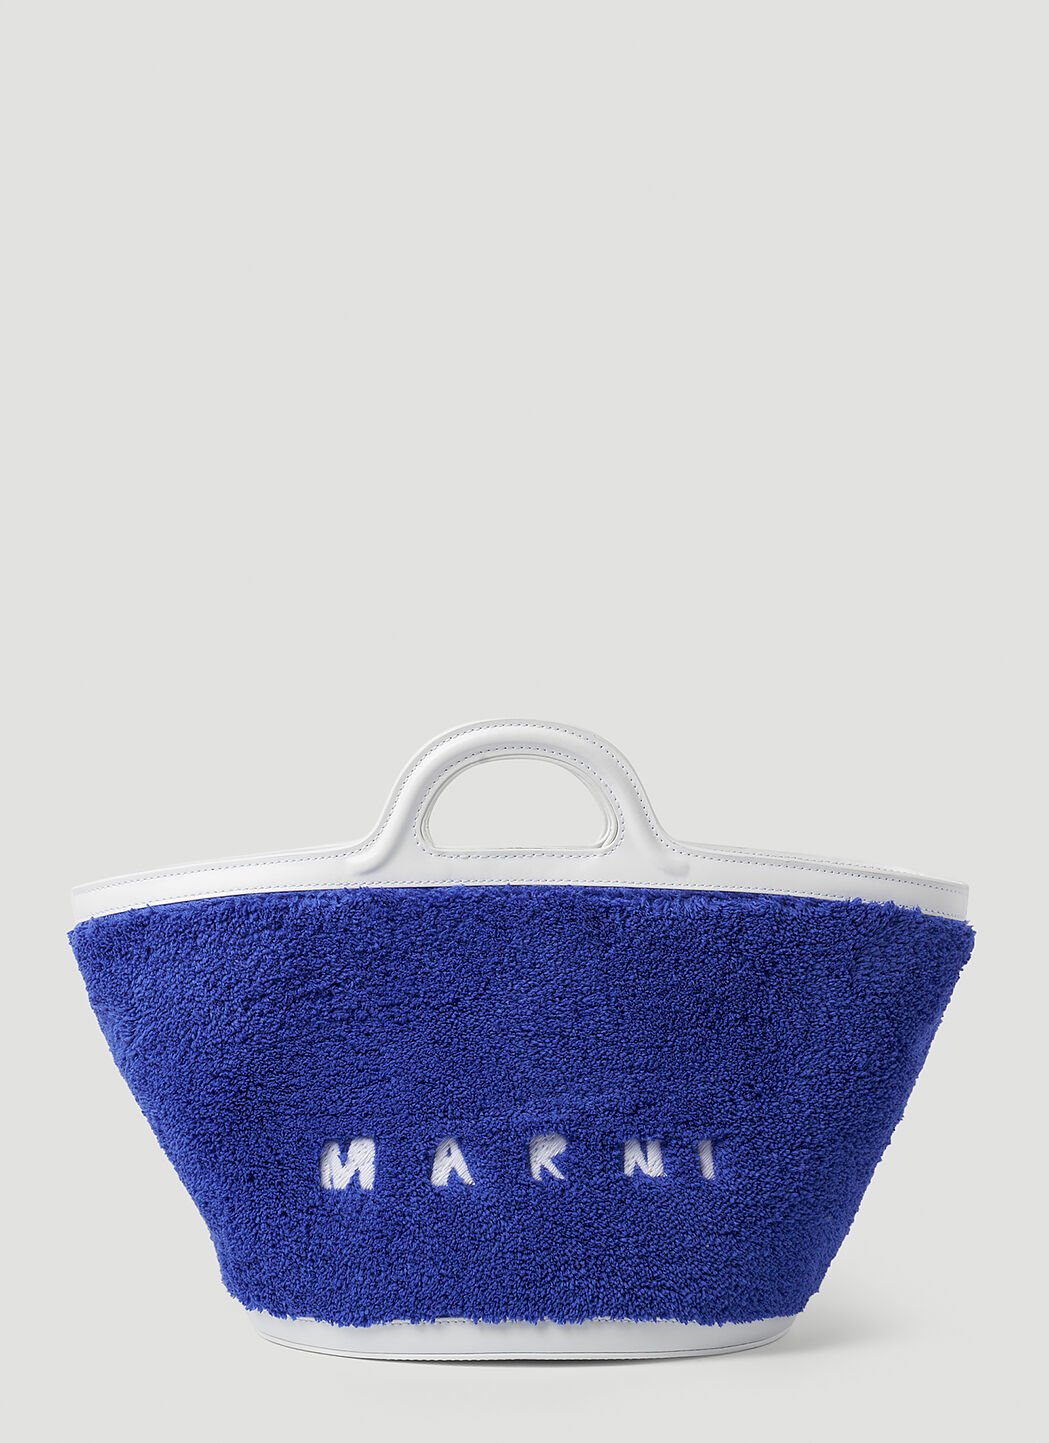 Marni Tropicalia 小号水桶托特包 牛仔蓝 mni0251028